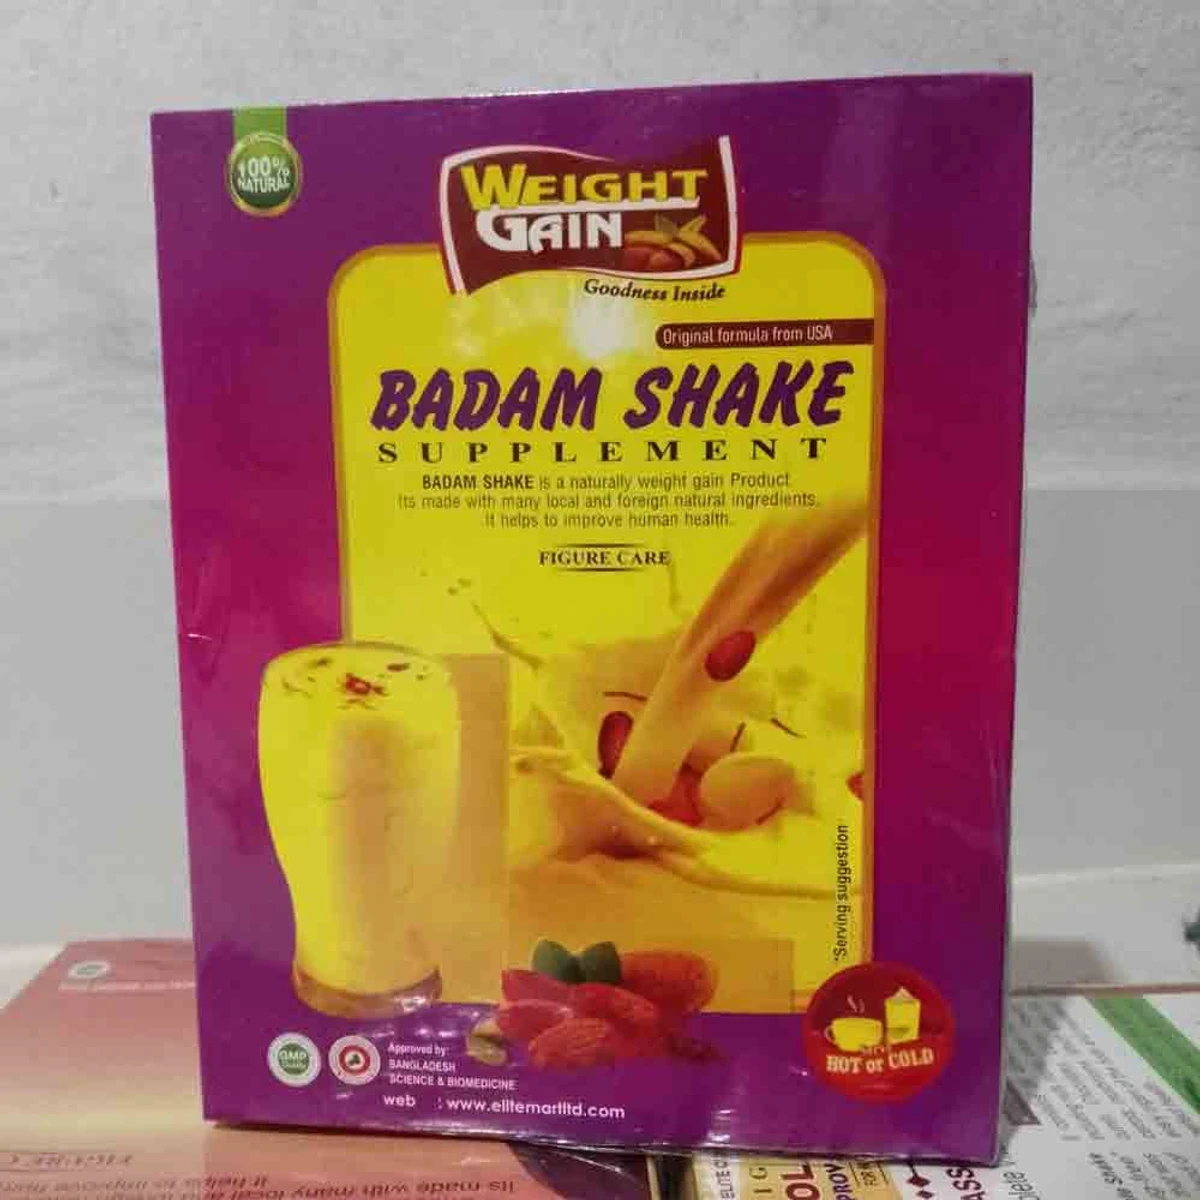 Badam Shake